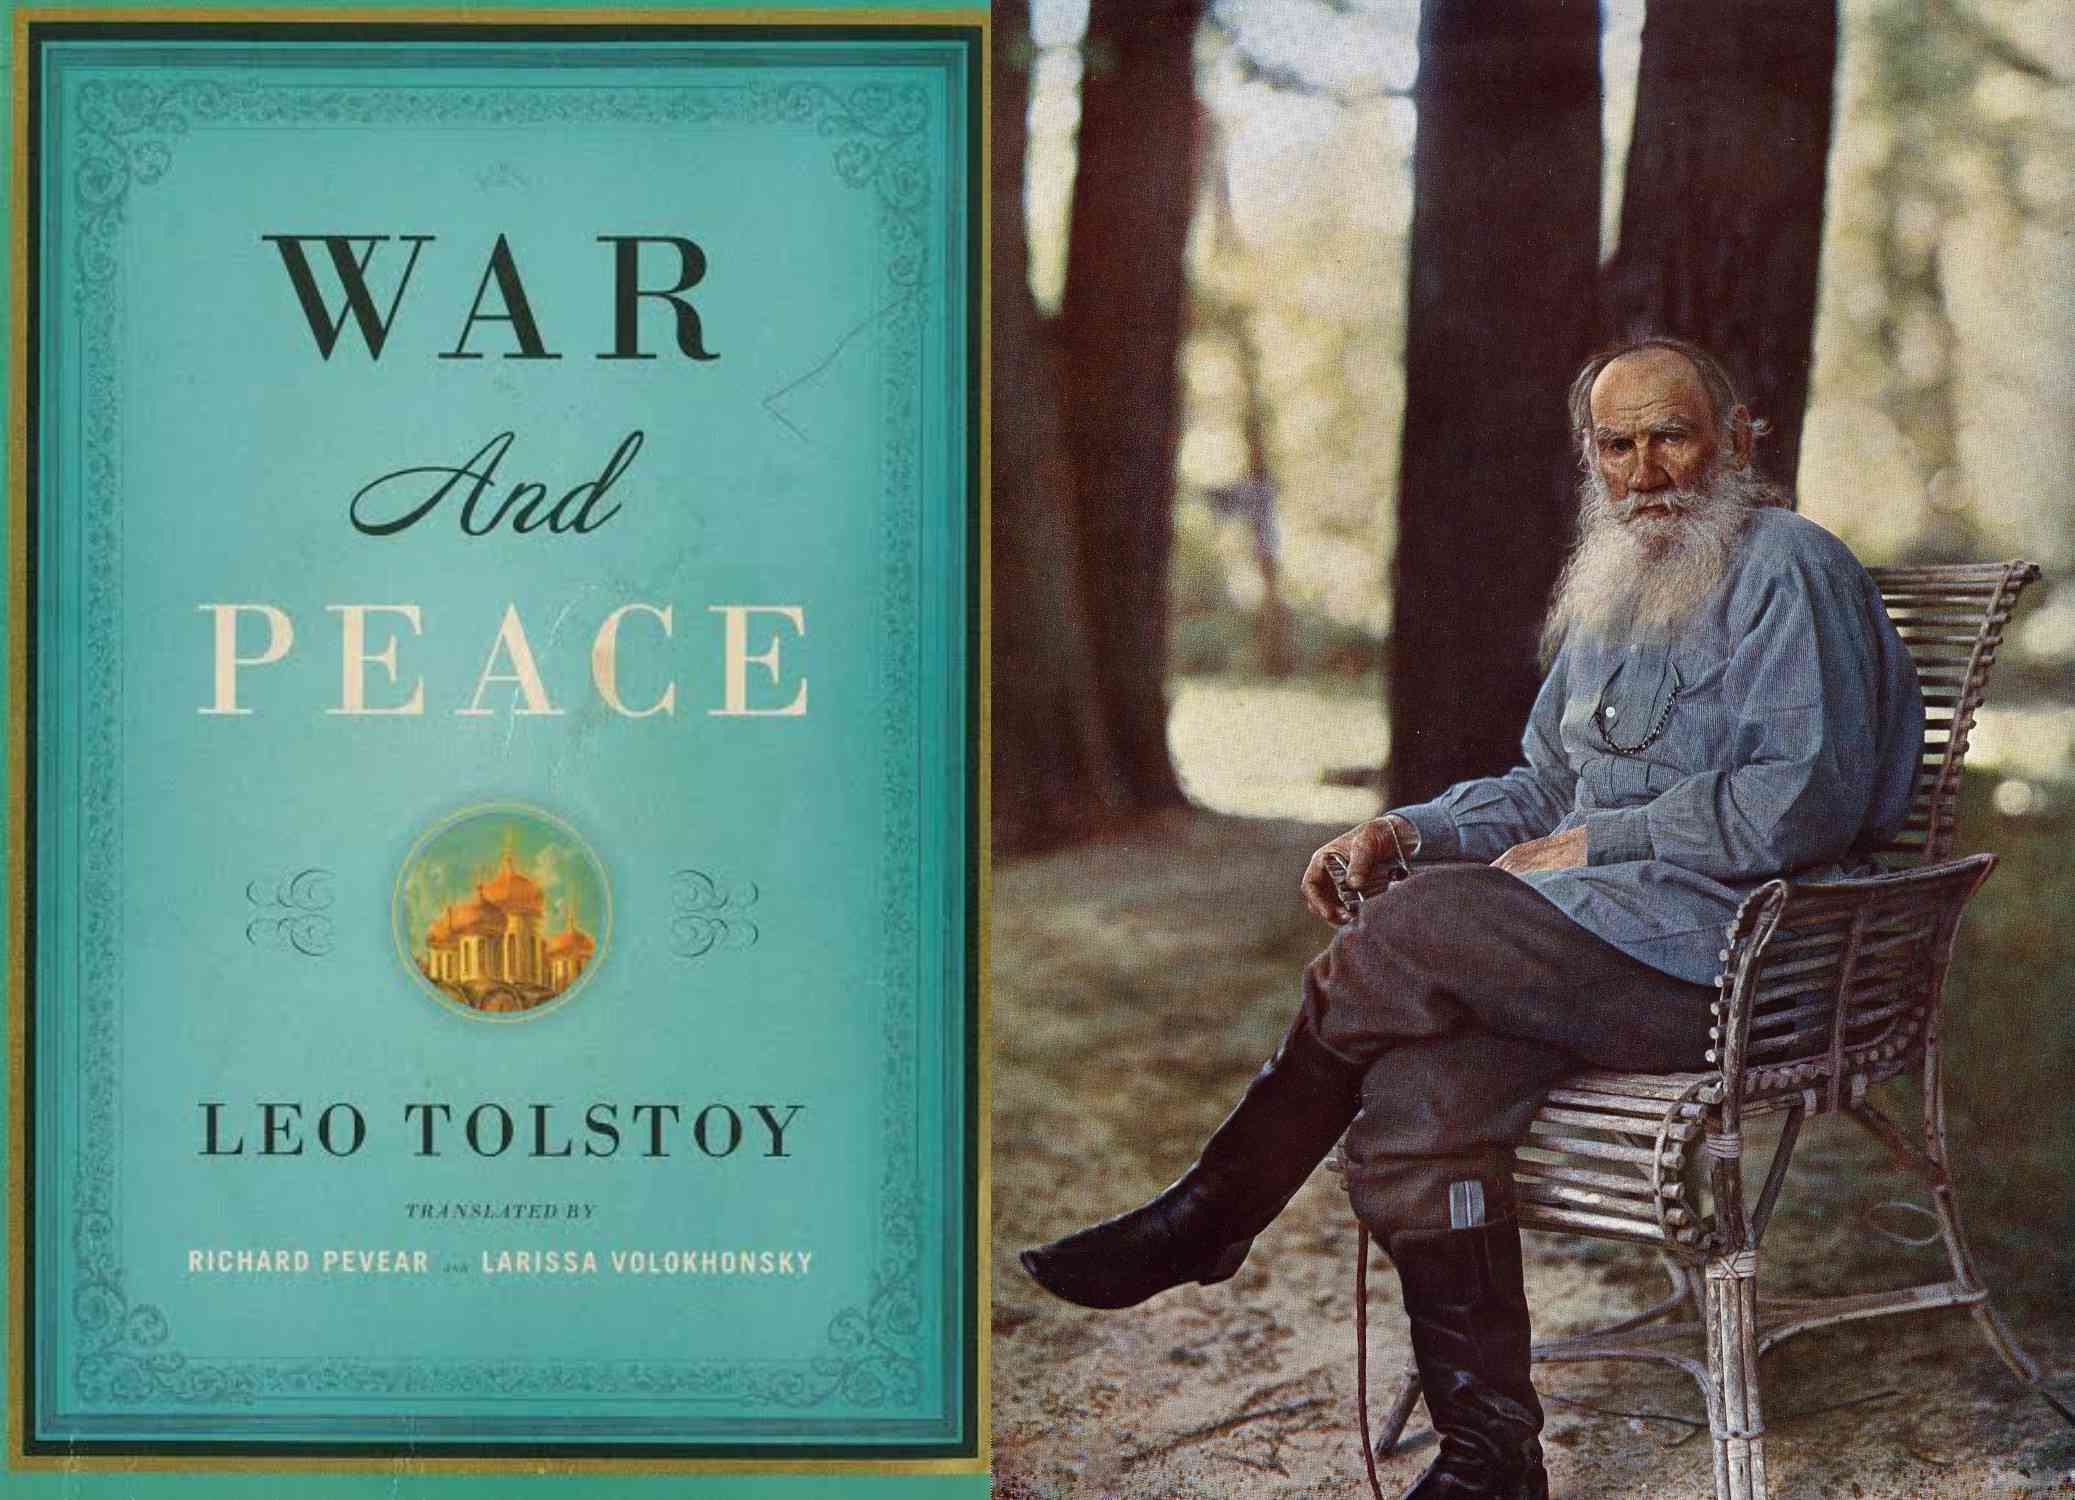 Leo Tolstoy’s books